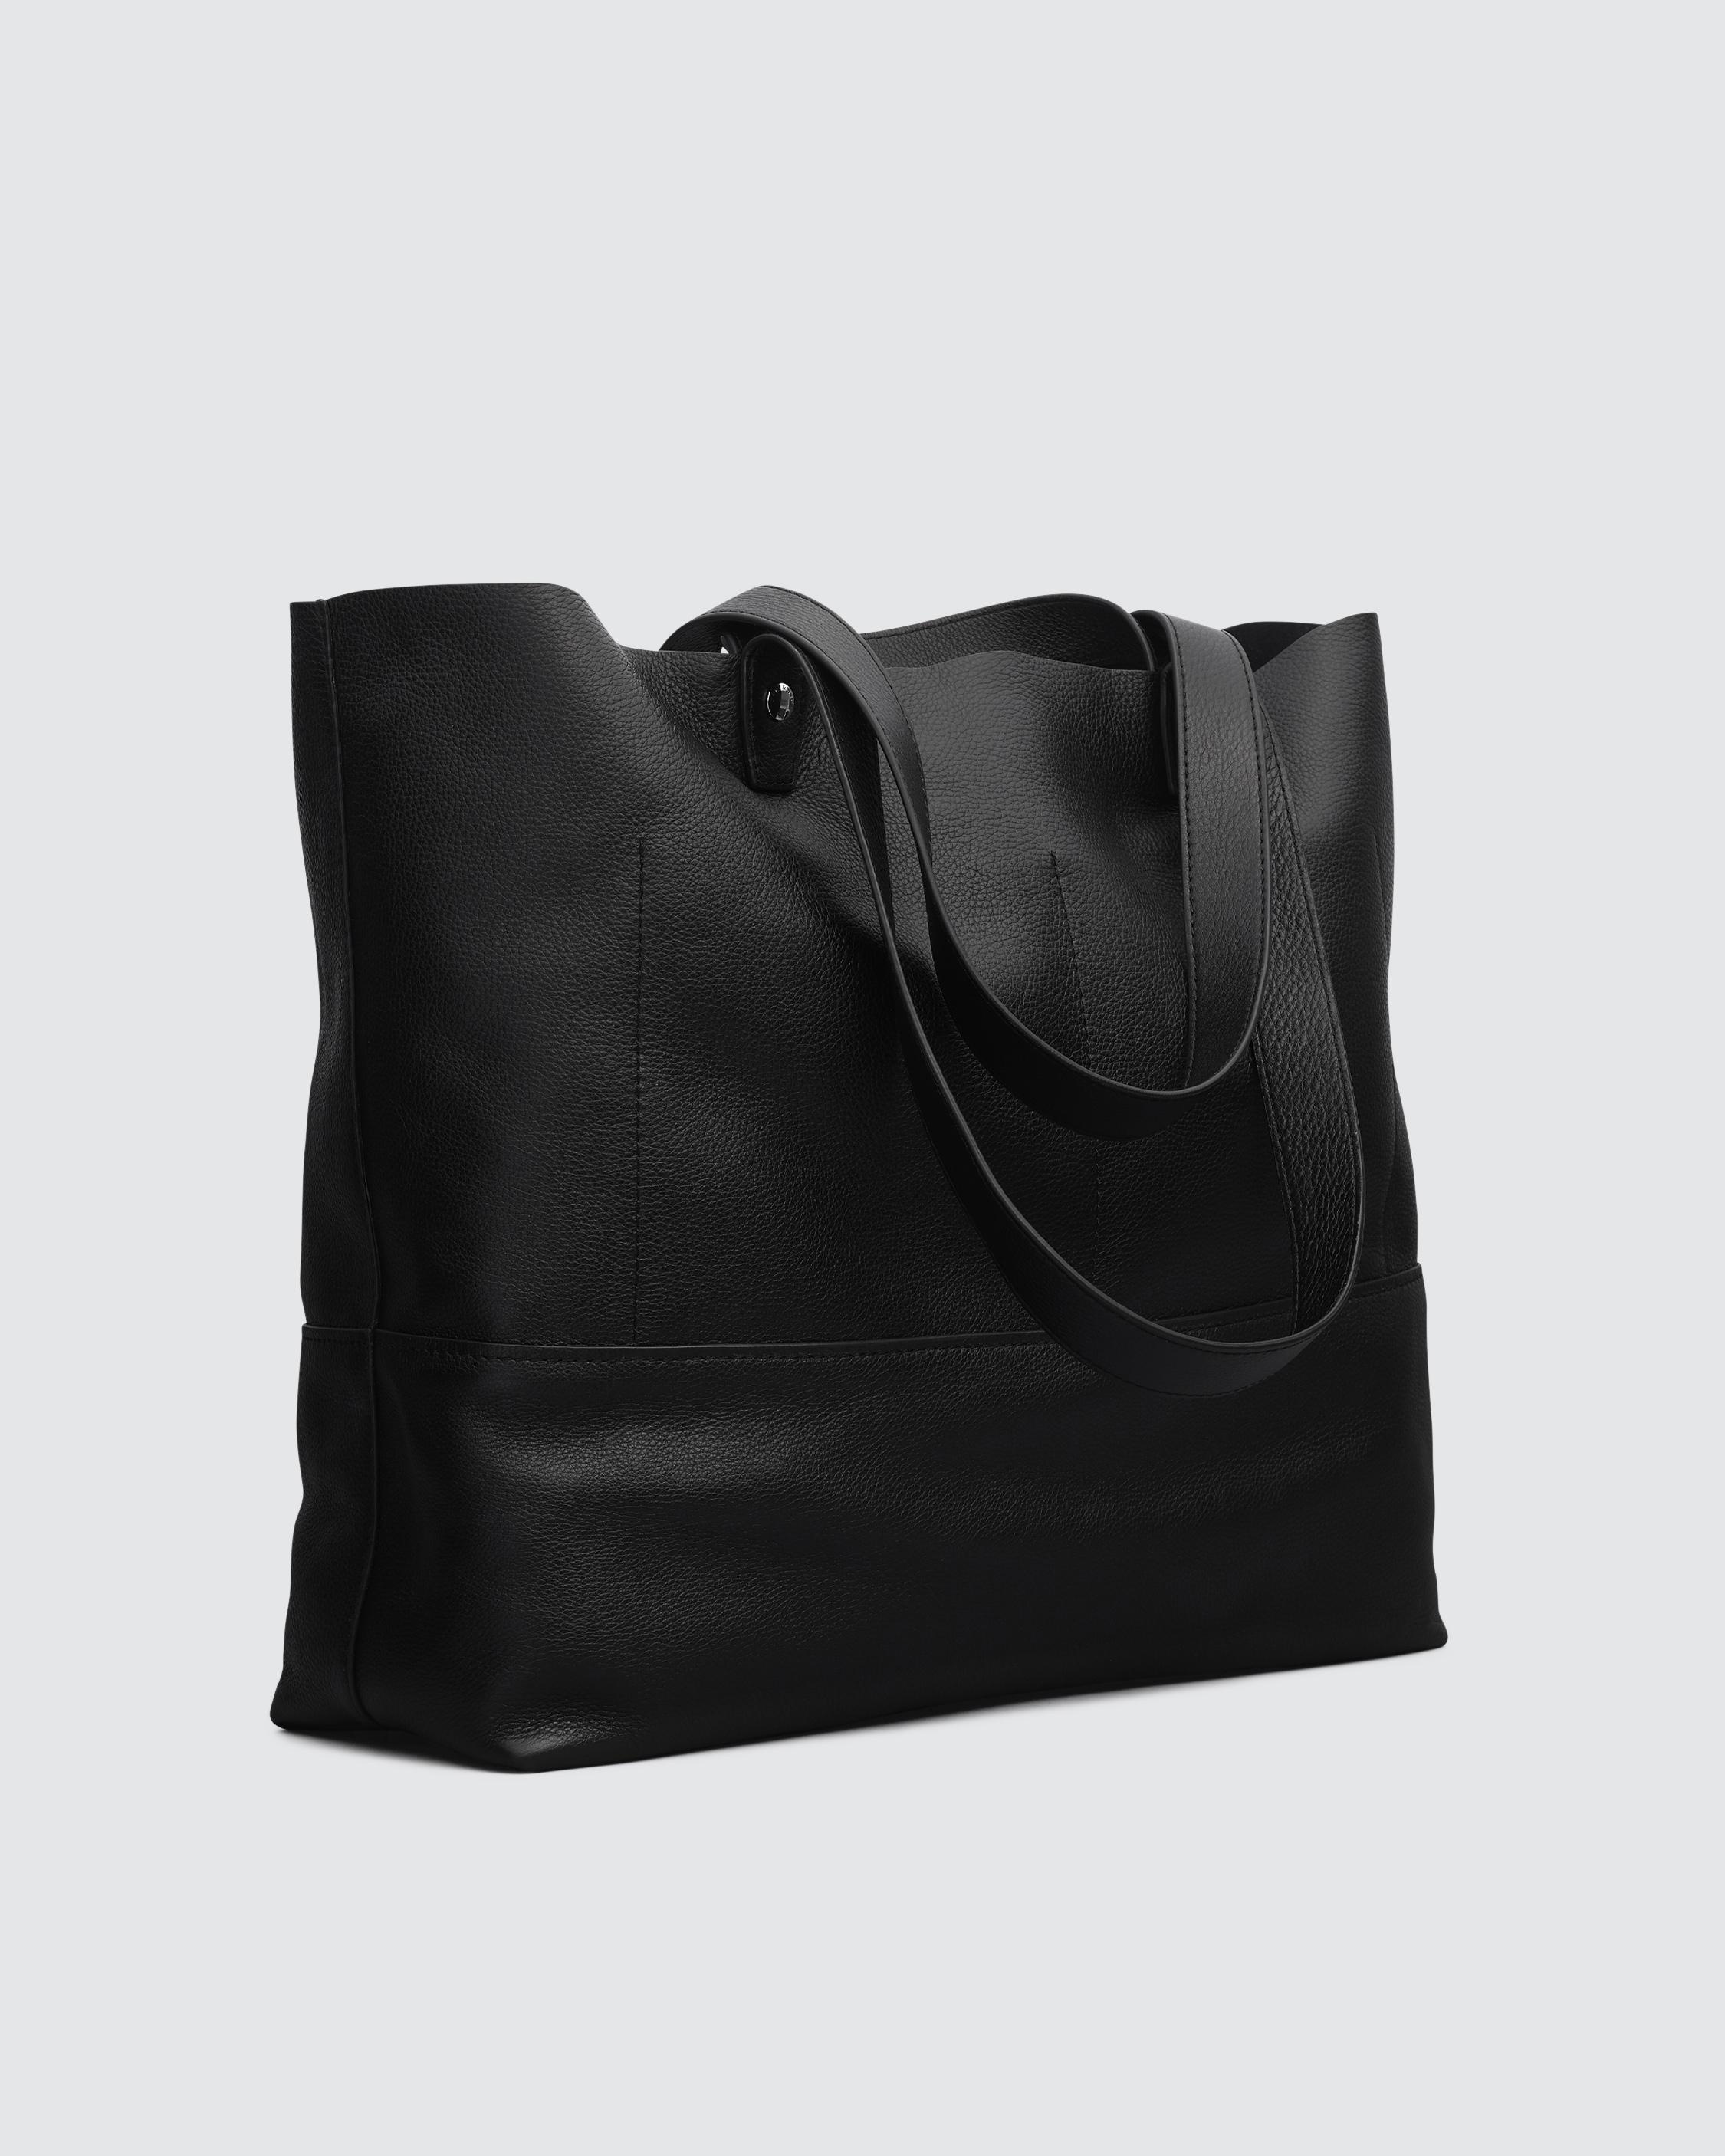 Logan Tote - Leather
Large Tote Bag - 3